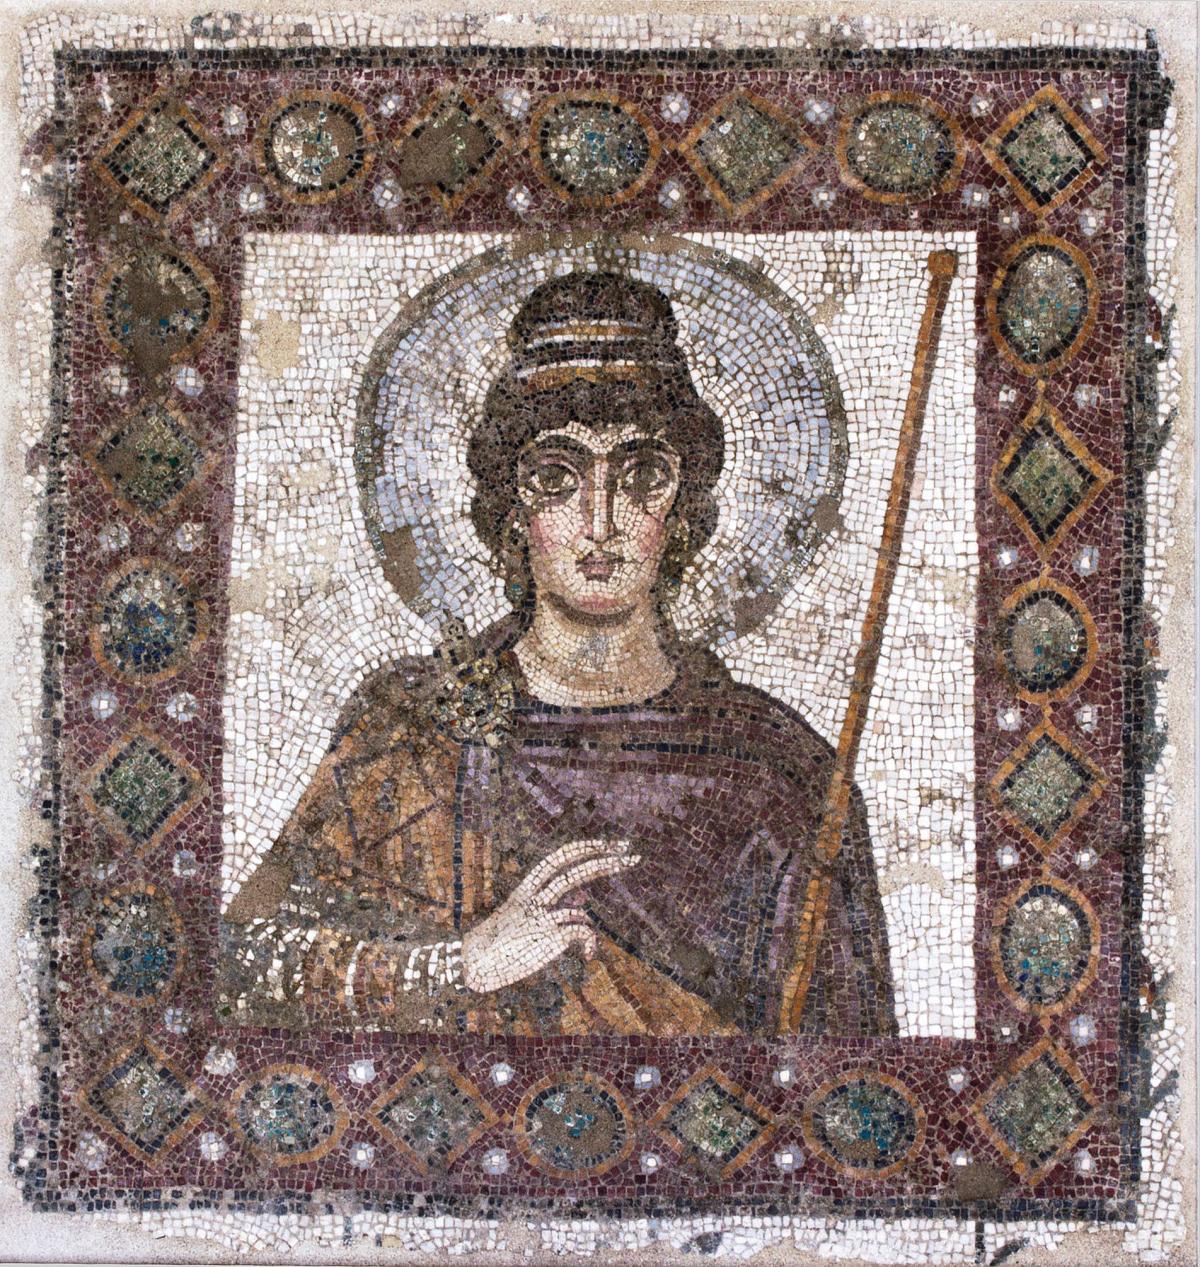 Lady of Carthage mosaic